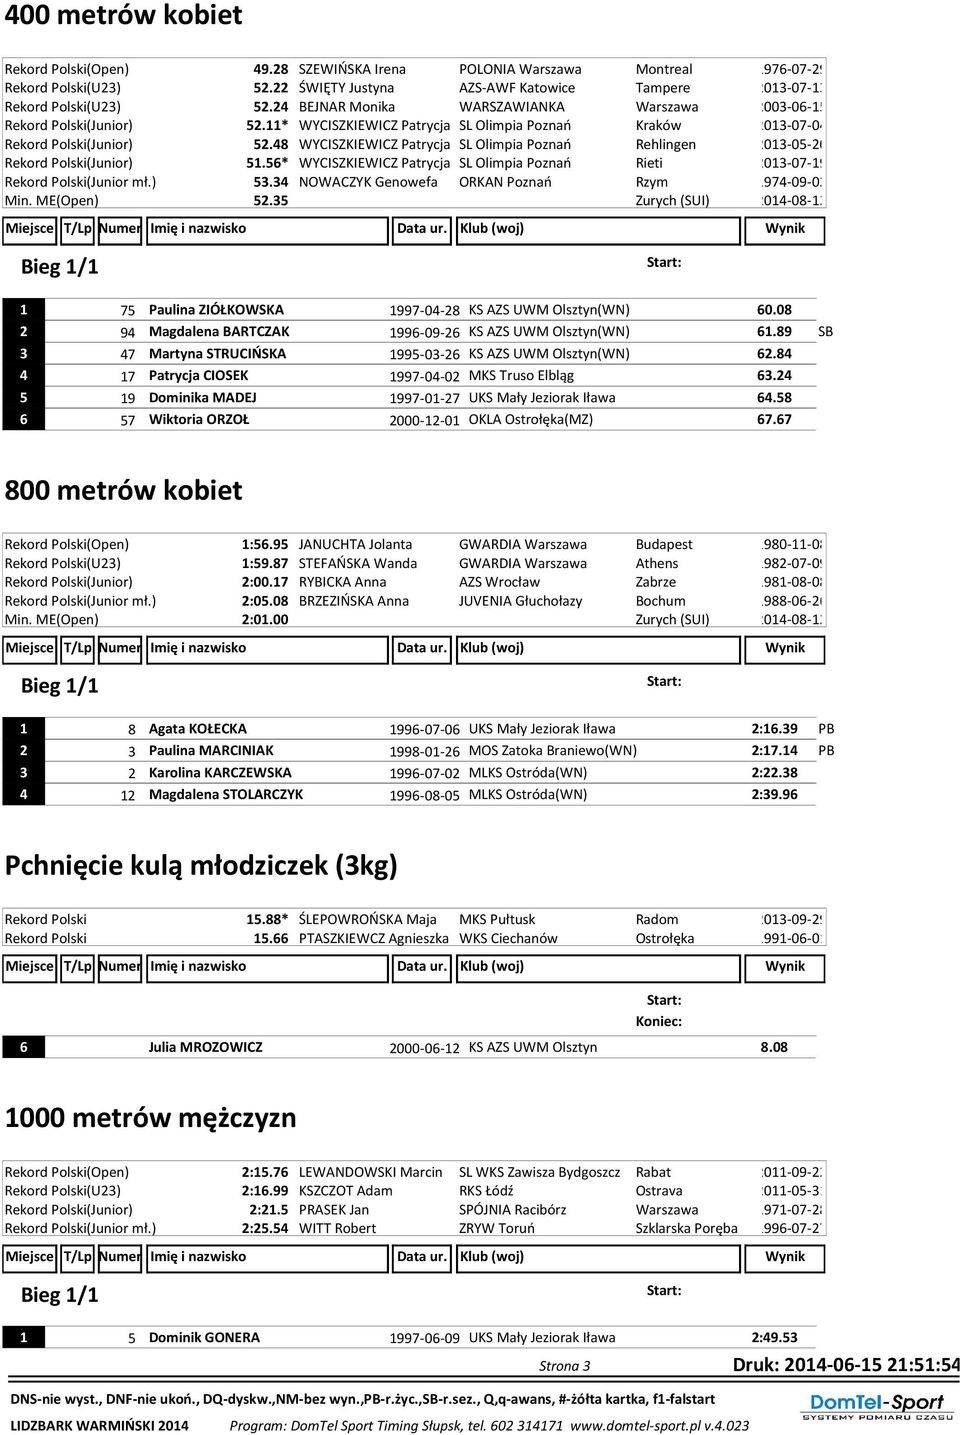 48 WYCISZKIEWICZ Patrycja SL Olimpia Poznań Rehlingen 2013-05-20 Rekord Polski(Junior) 51.56* WYCISZKIEWICZ Patrycja SL Olimpia Poznań Rieti 2013-07-19 Rekord Polski(Junior mł.) 53.